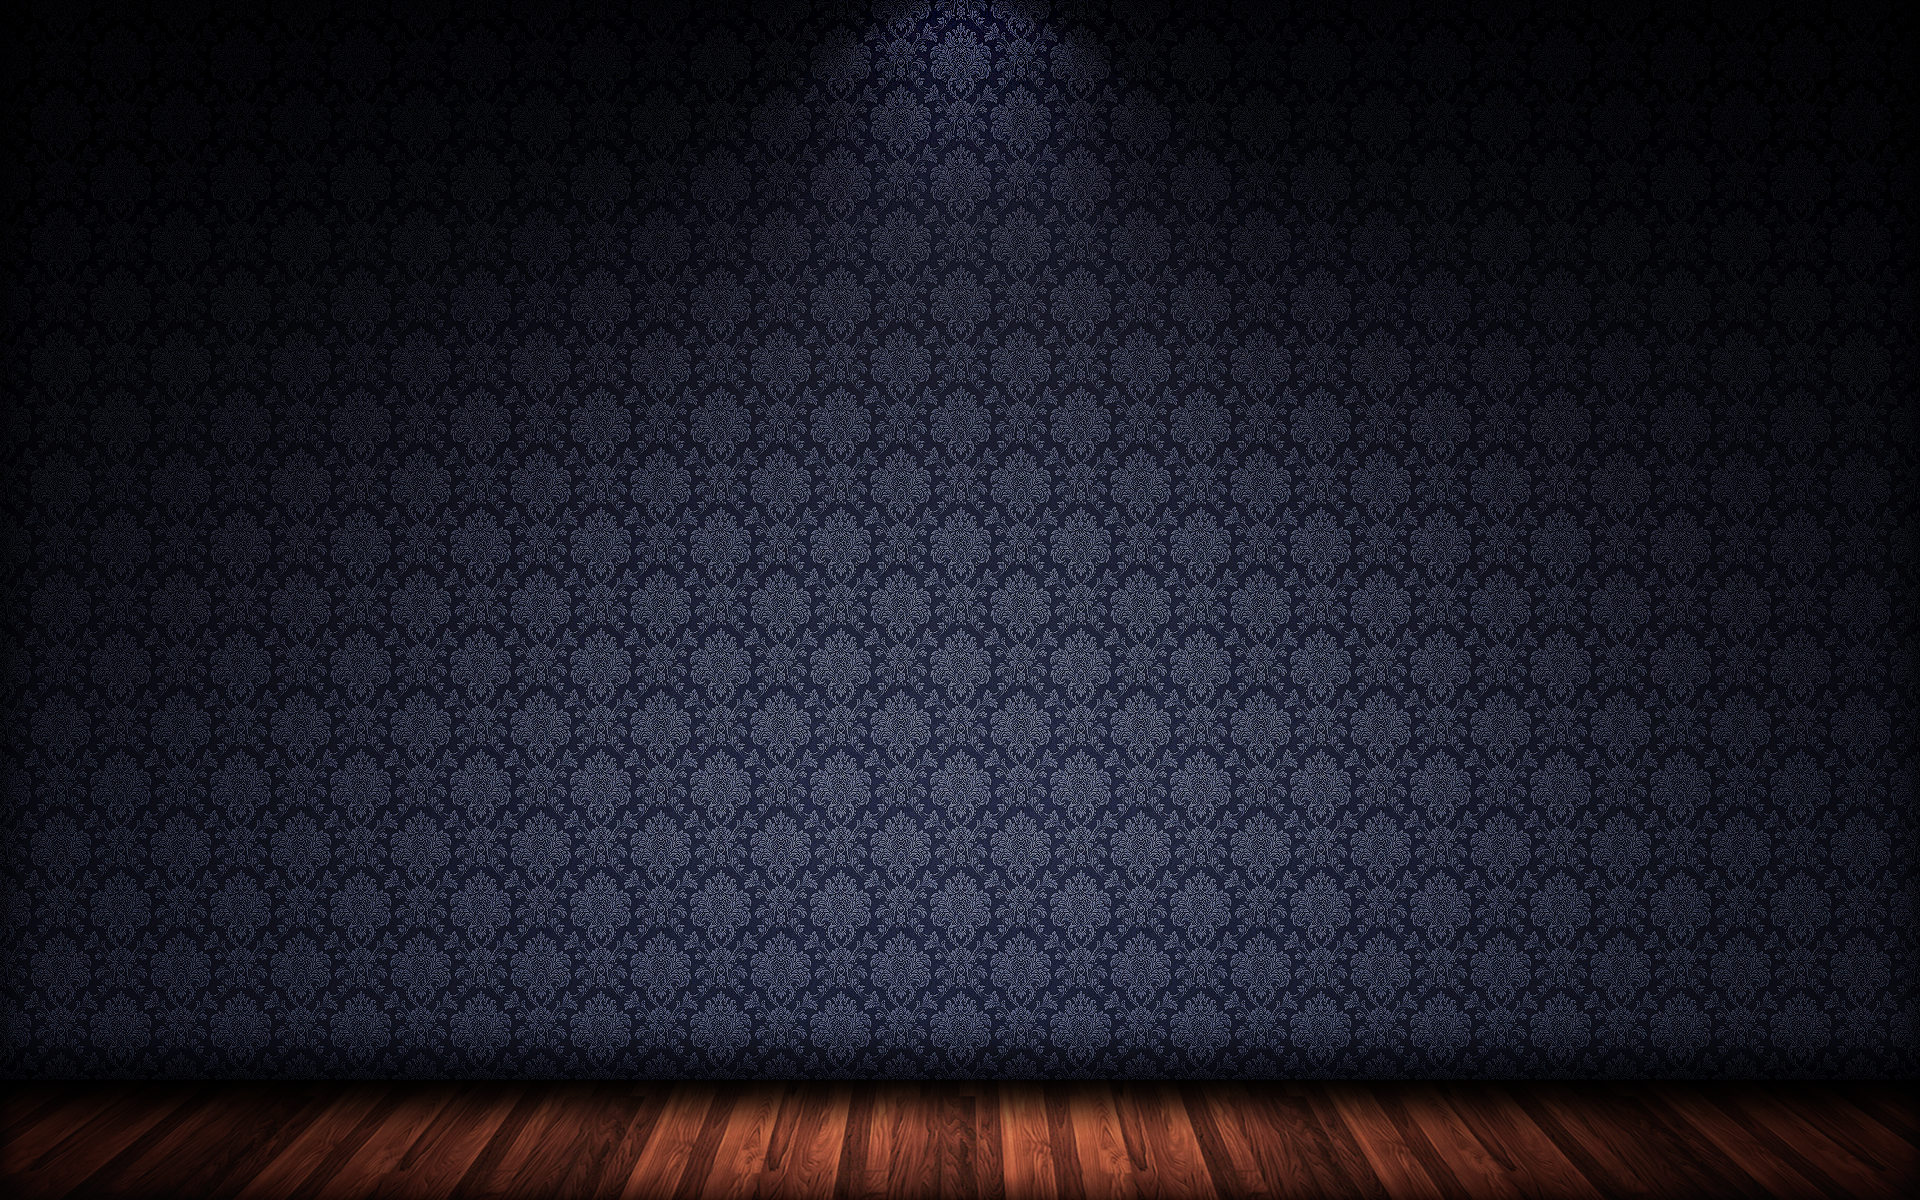 3D Room Floor Wall Patterns Wallpaper